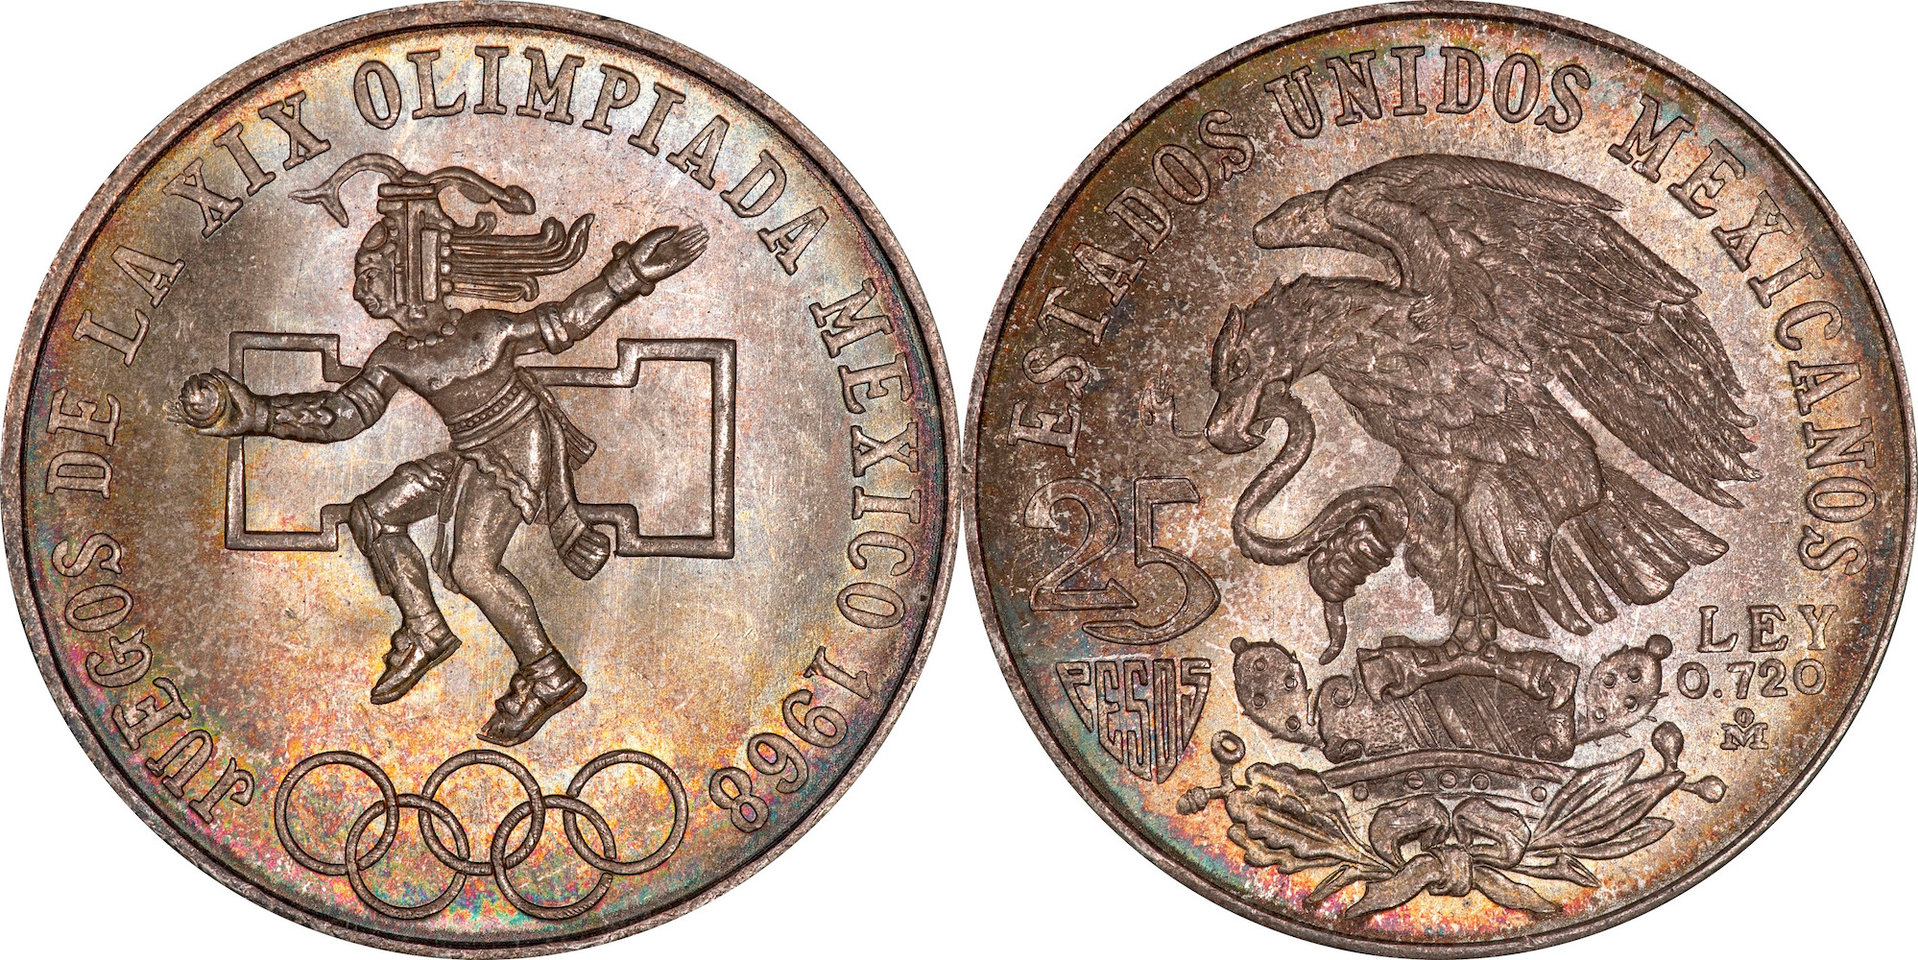 Mexico - 1968 25 Pesos.jpg